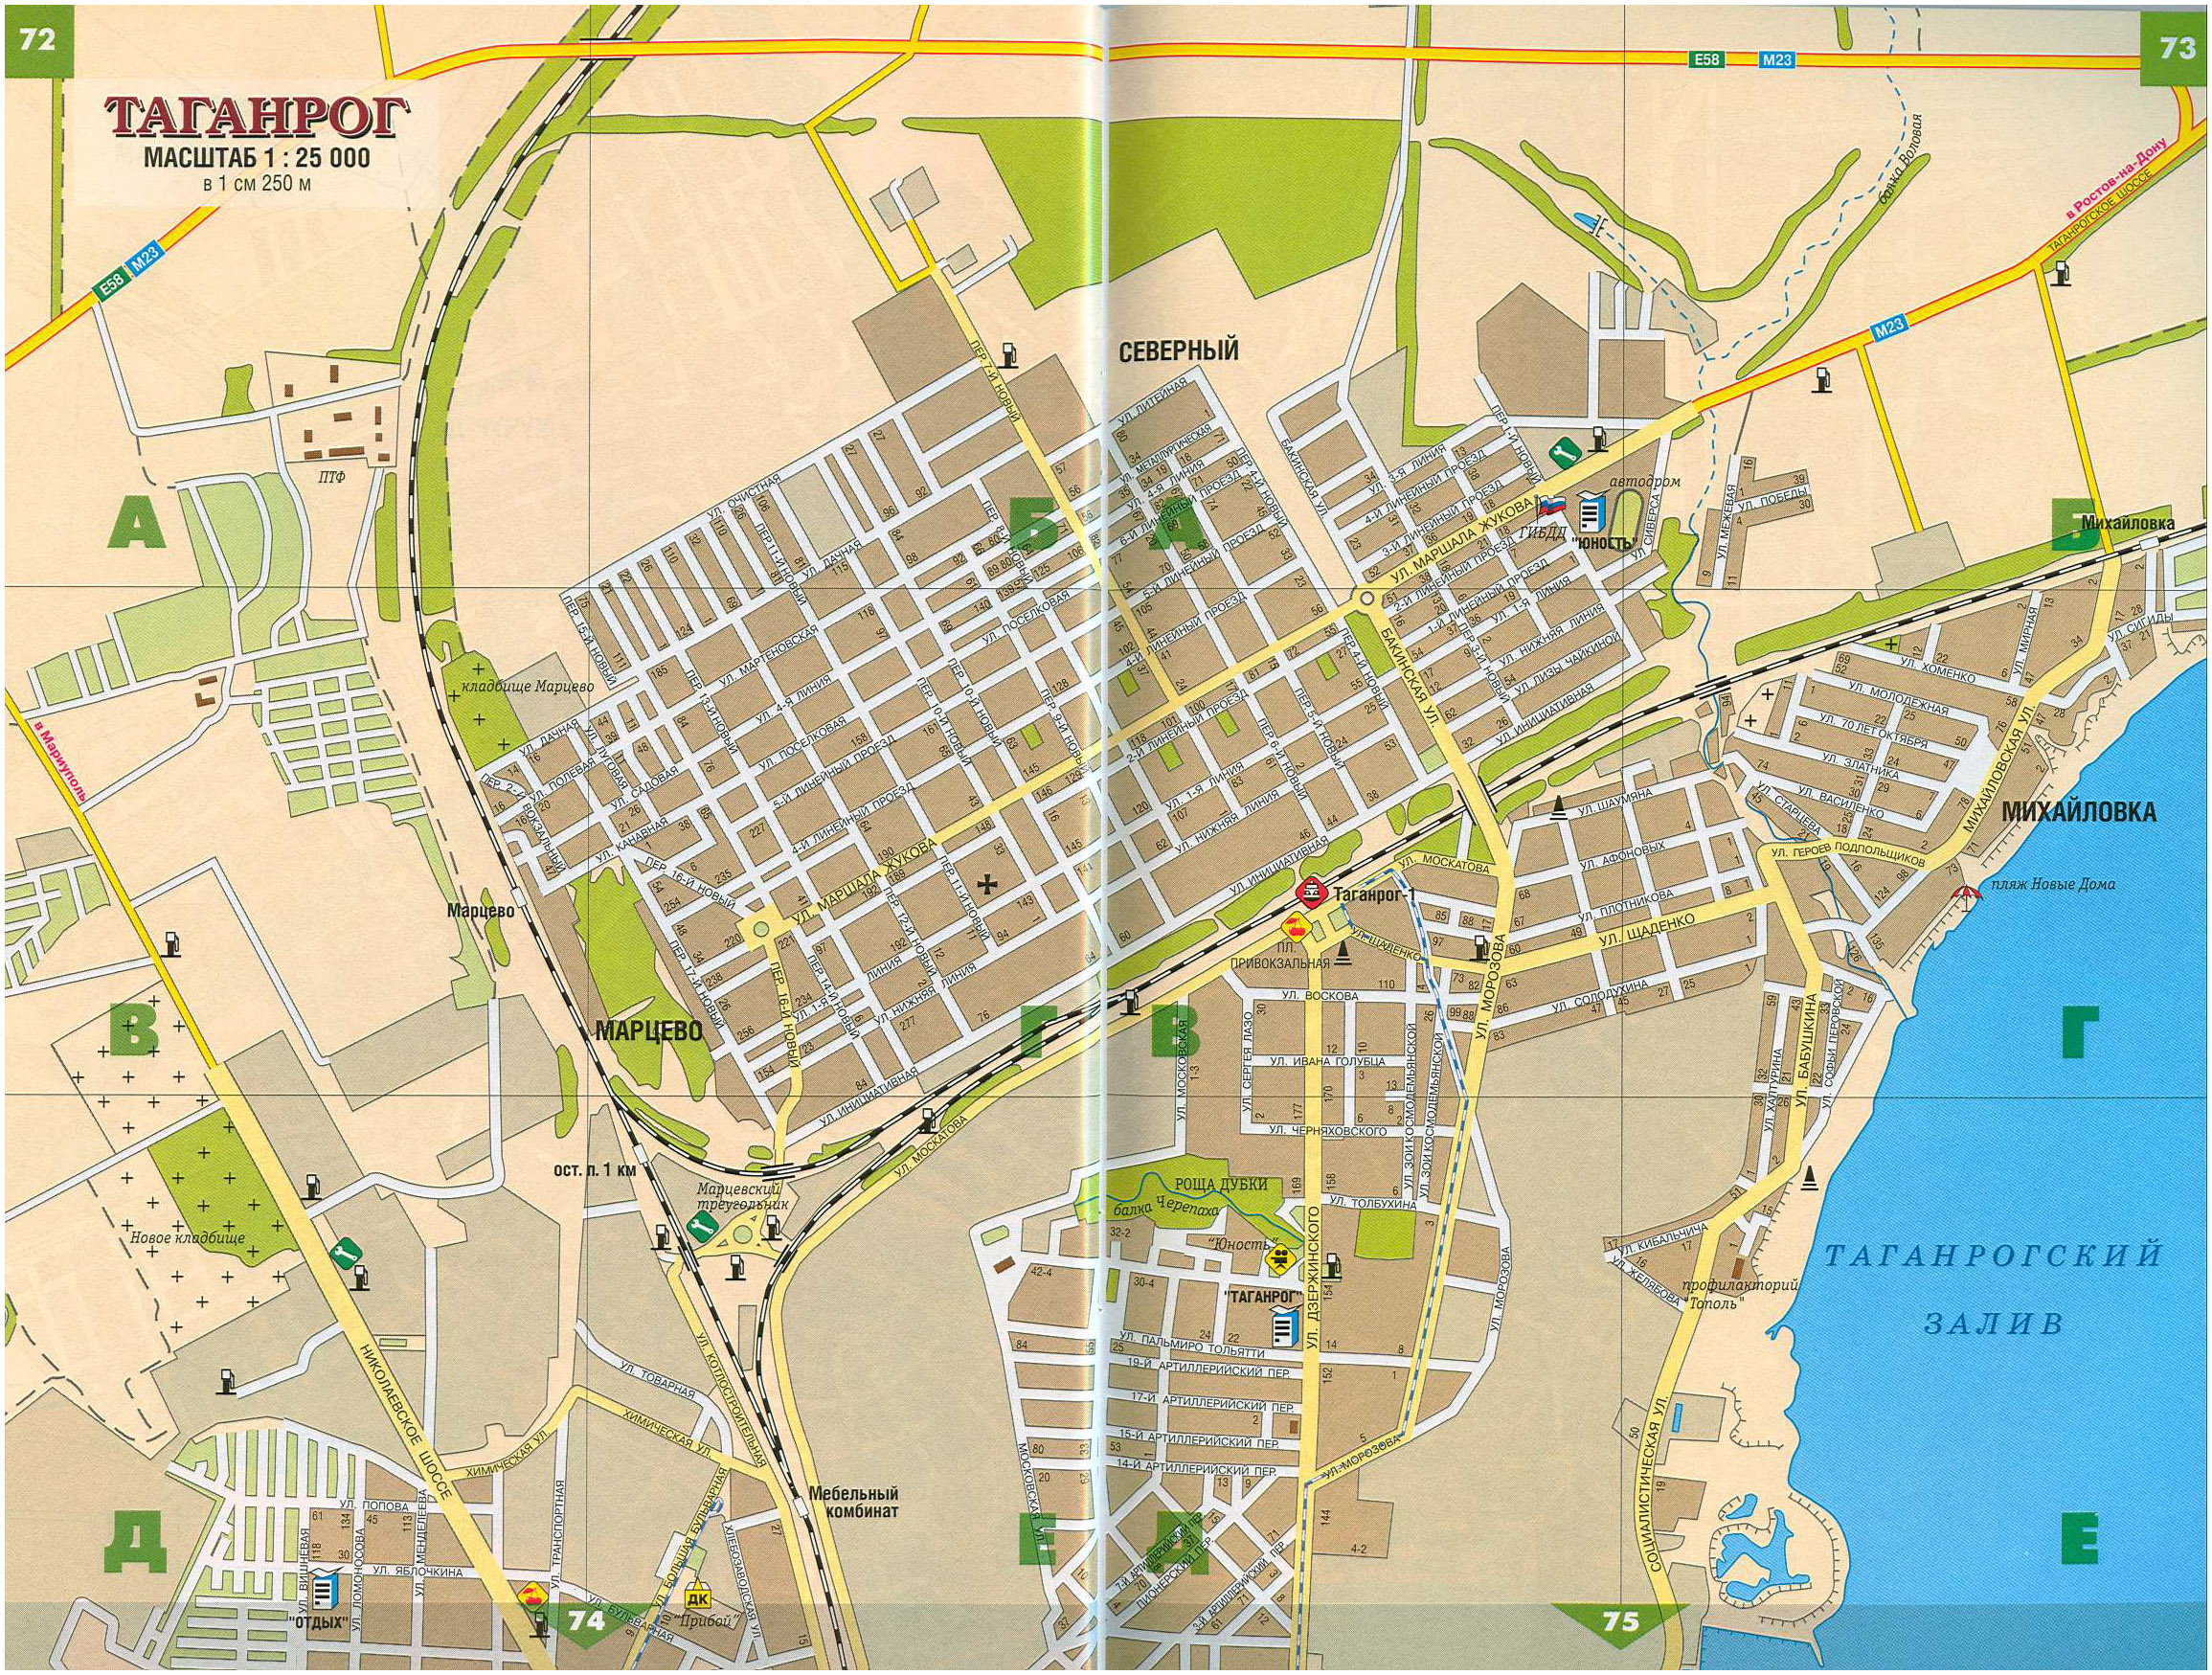 Карта г. Таганрог. Карта города Таганрога Ростовской области